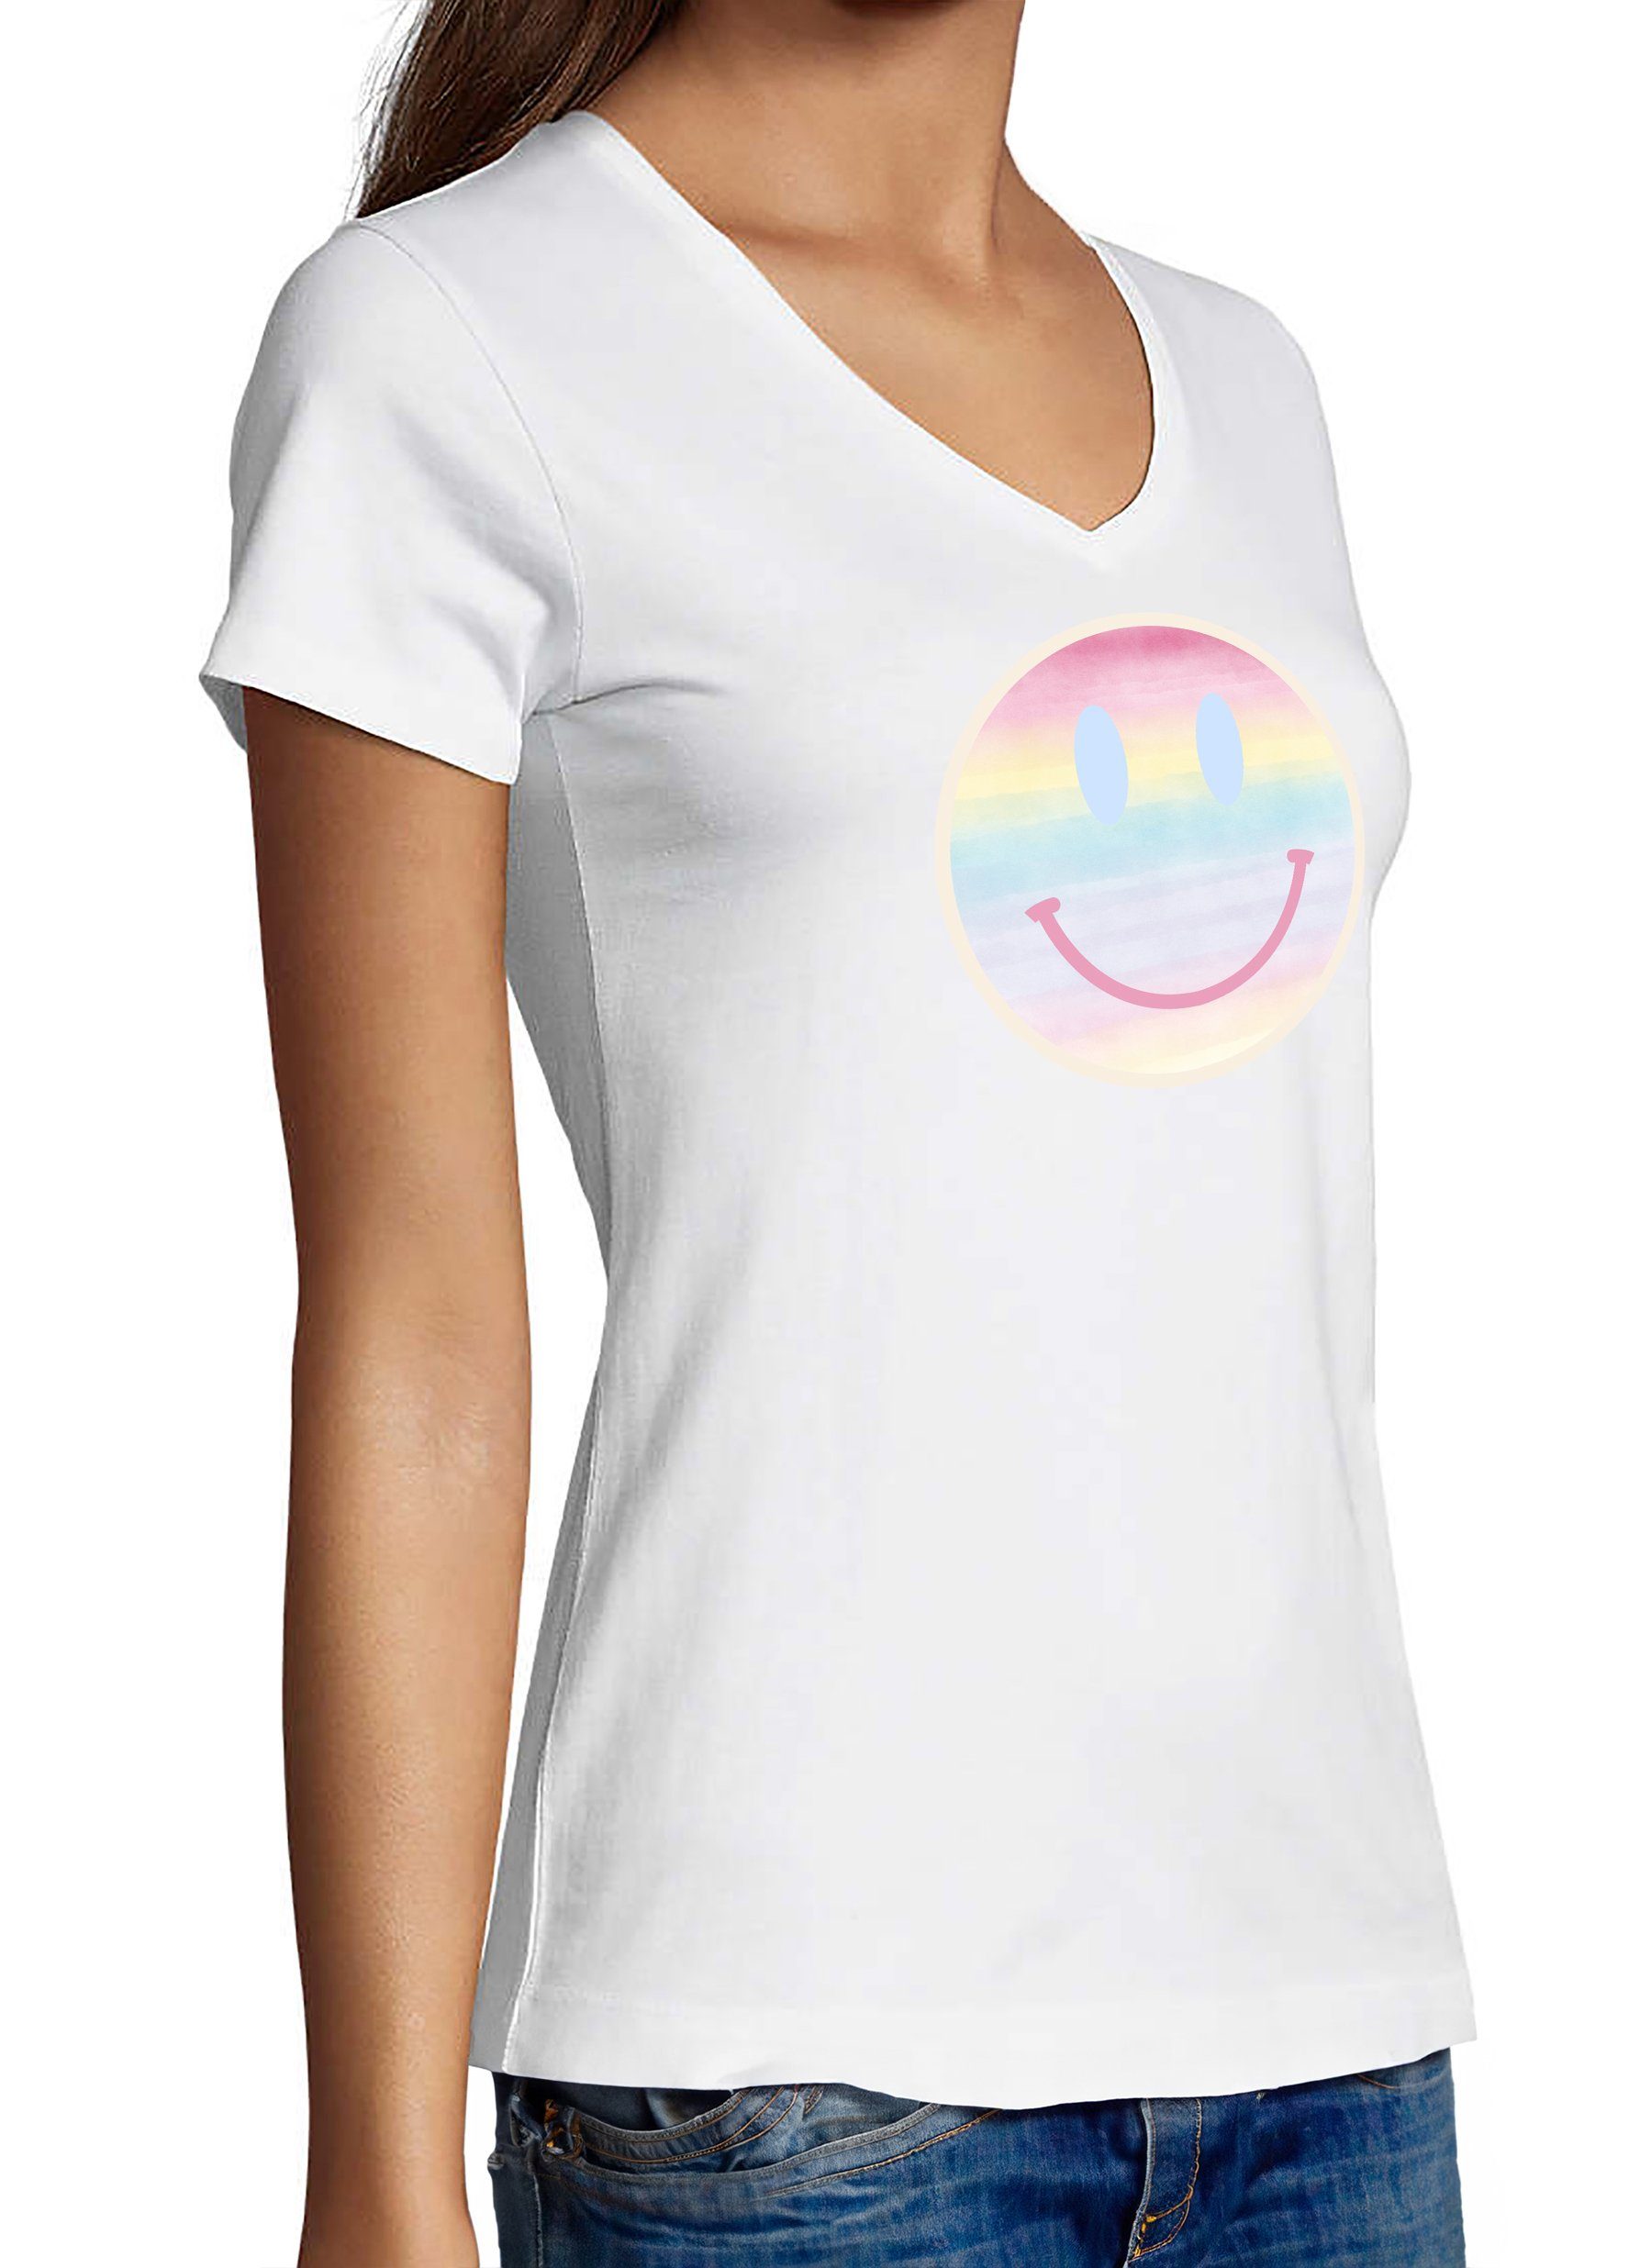 Lächelnder Smiley V-Ausschnitt T-Shirt Print MyDesign24 Shirt Fit, Damen i297 weiss pastellfarbener Baumwollshirt mit Aufdruck Smiley - Slim